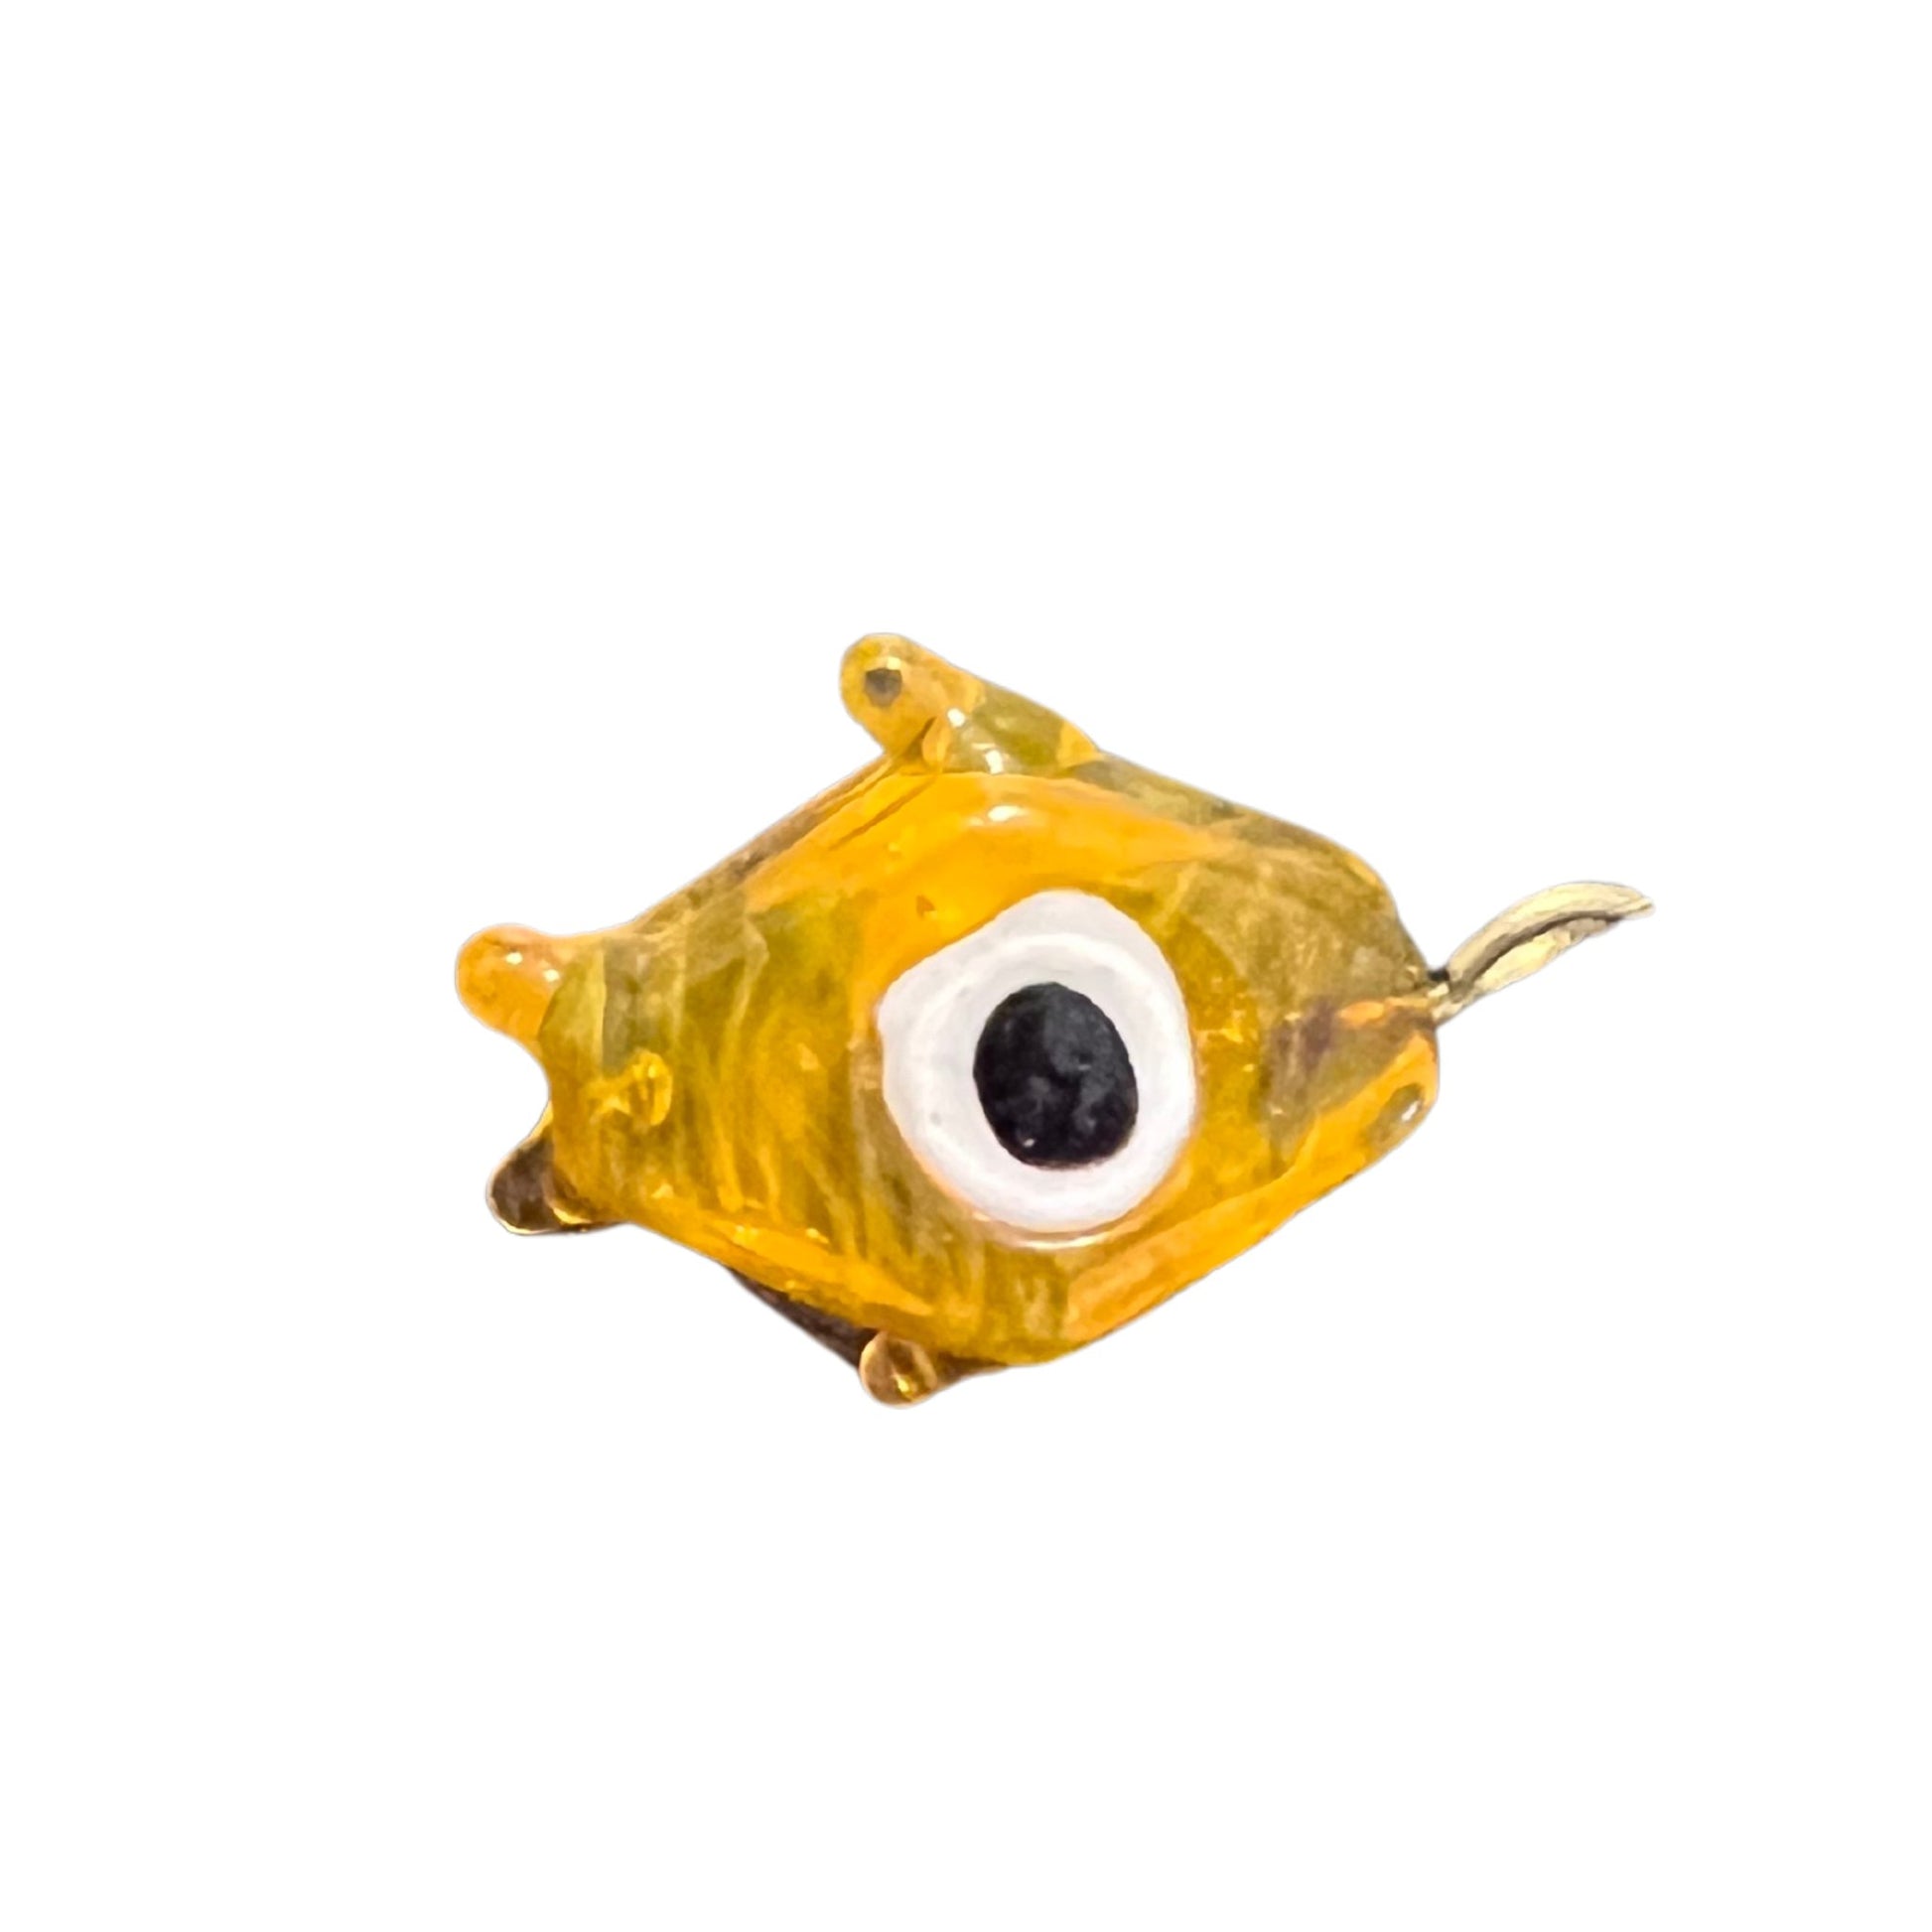 Orange Evil Eye Fish - Something about Sofia